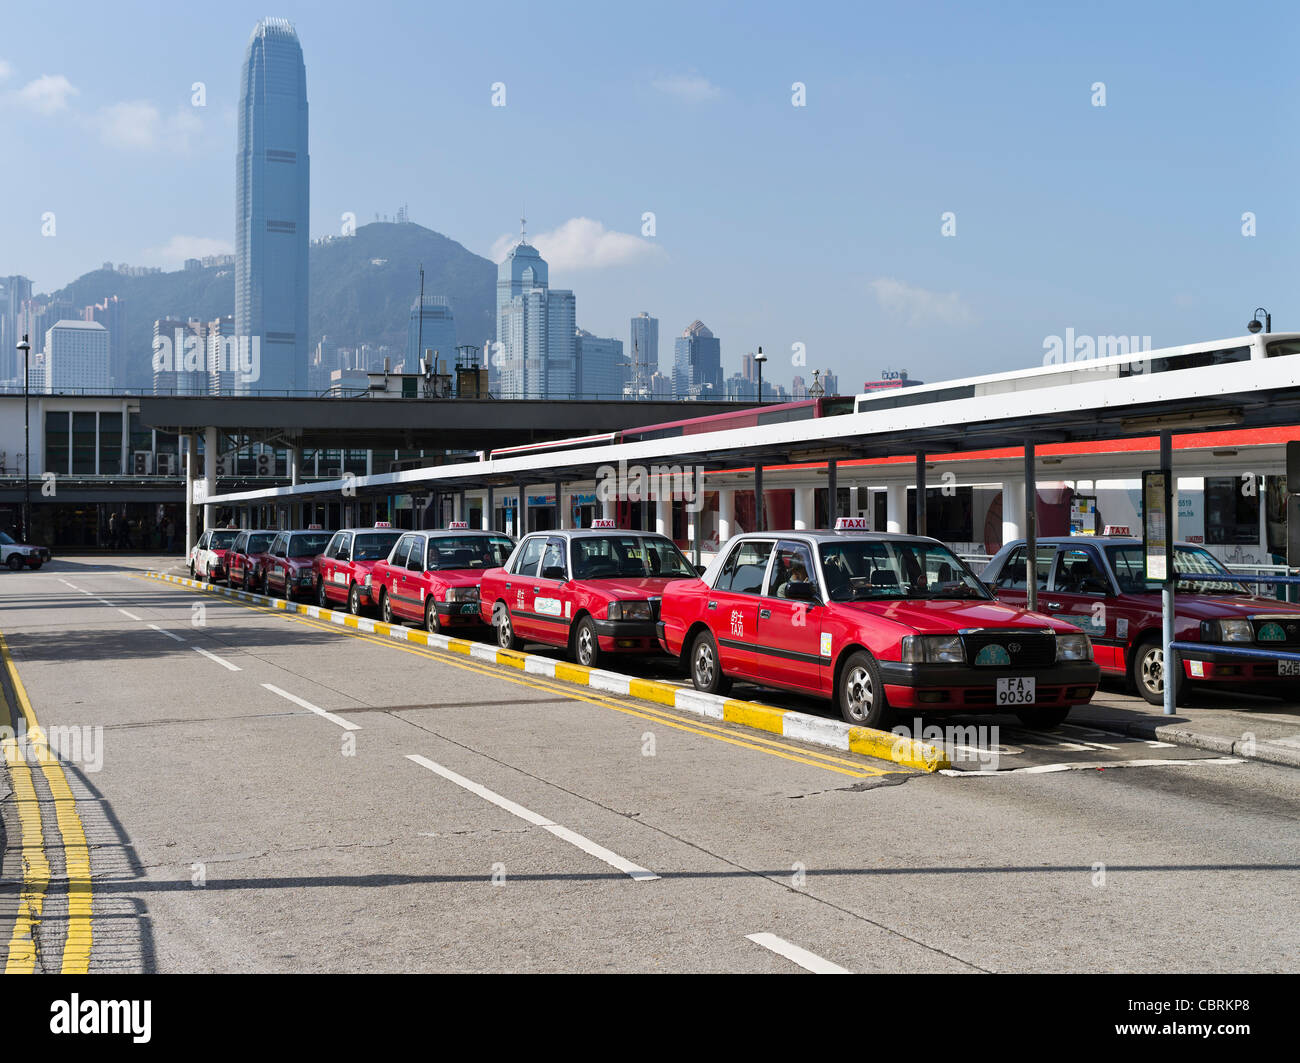 dh  TSIM SHA TSUI HONG KONG Tsim Sha Tsui Ferry Pier taxi rank with red taxis Stock Photo